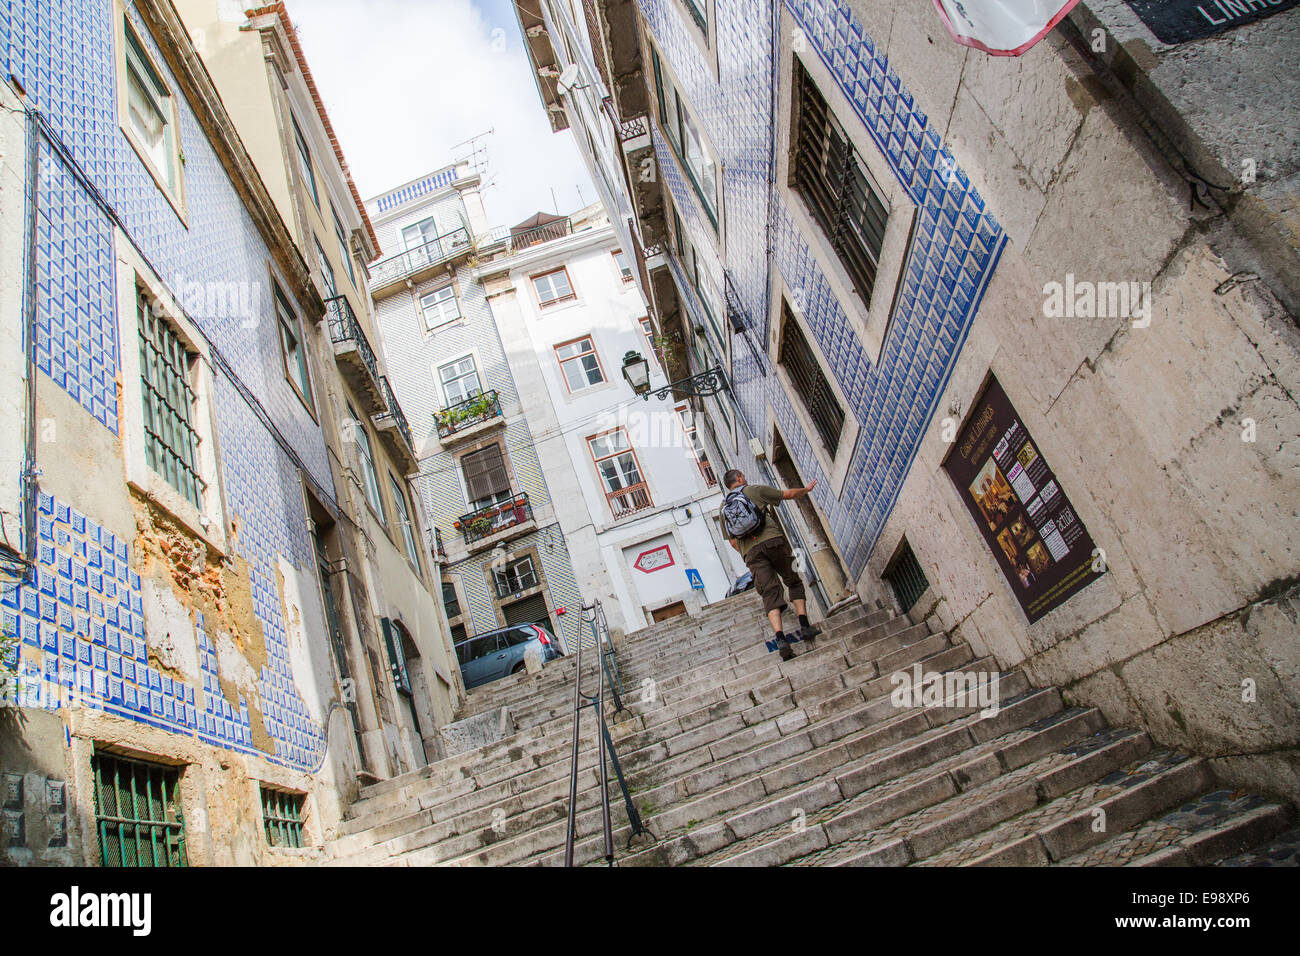 L'image de la rue, Lisbonne, Portugal Banque D'Images